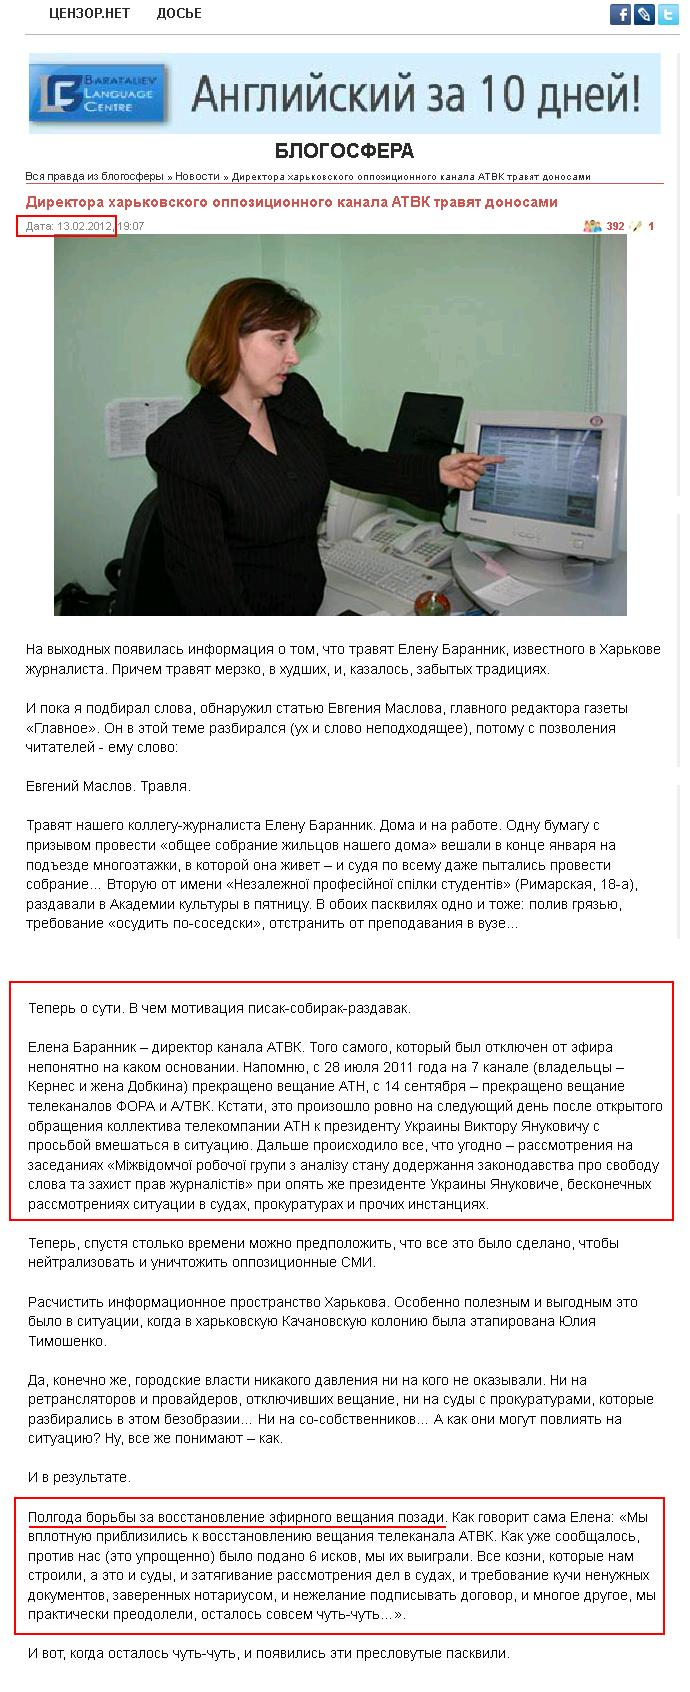 http://uainfo.censor.net.ua/news/10951-direktora-harkovskogo-oppozicionnogo-kanala-atv-travyat-donosami.html